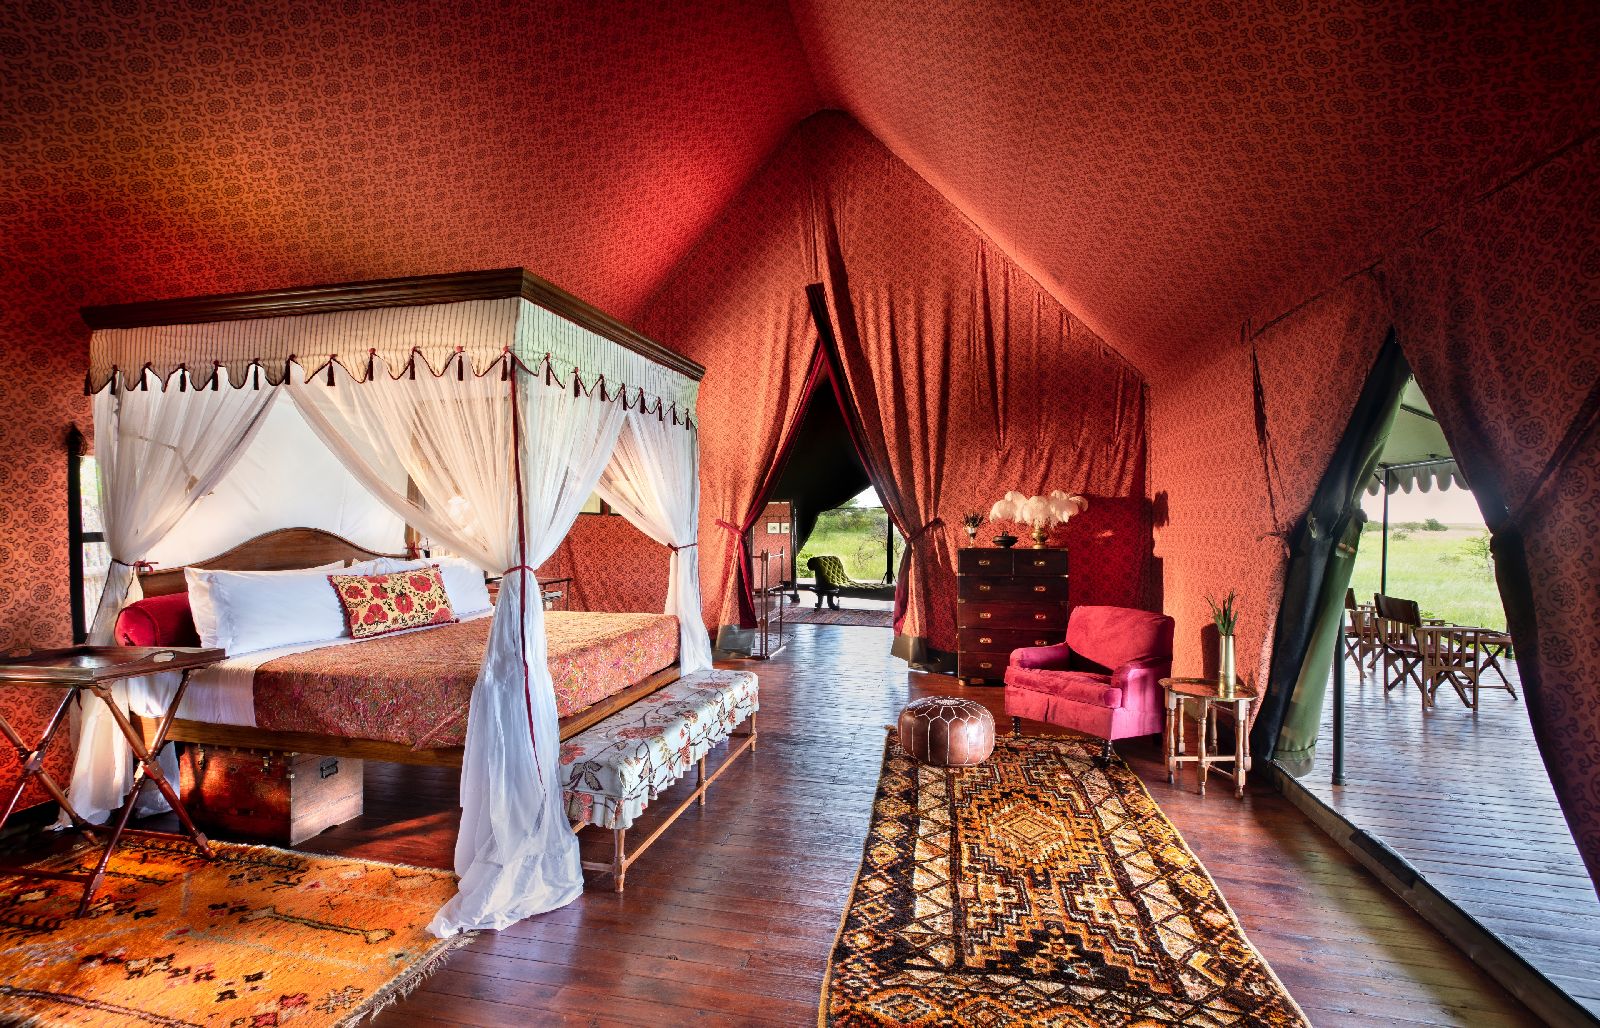 Safari tent interiors at Jacks Camp Botswana